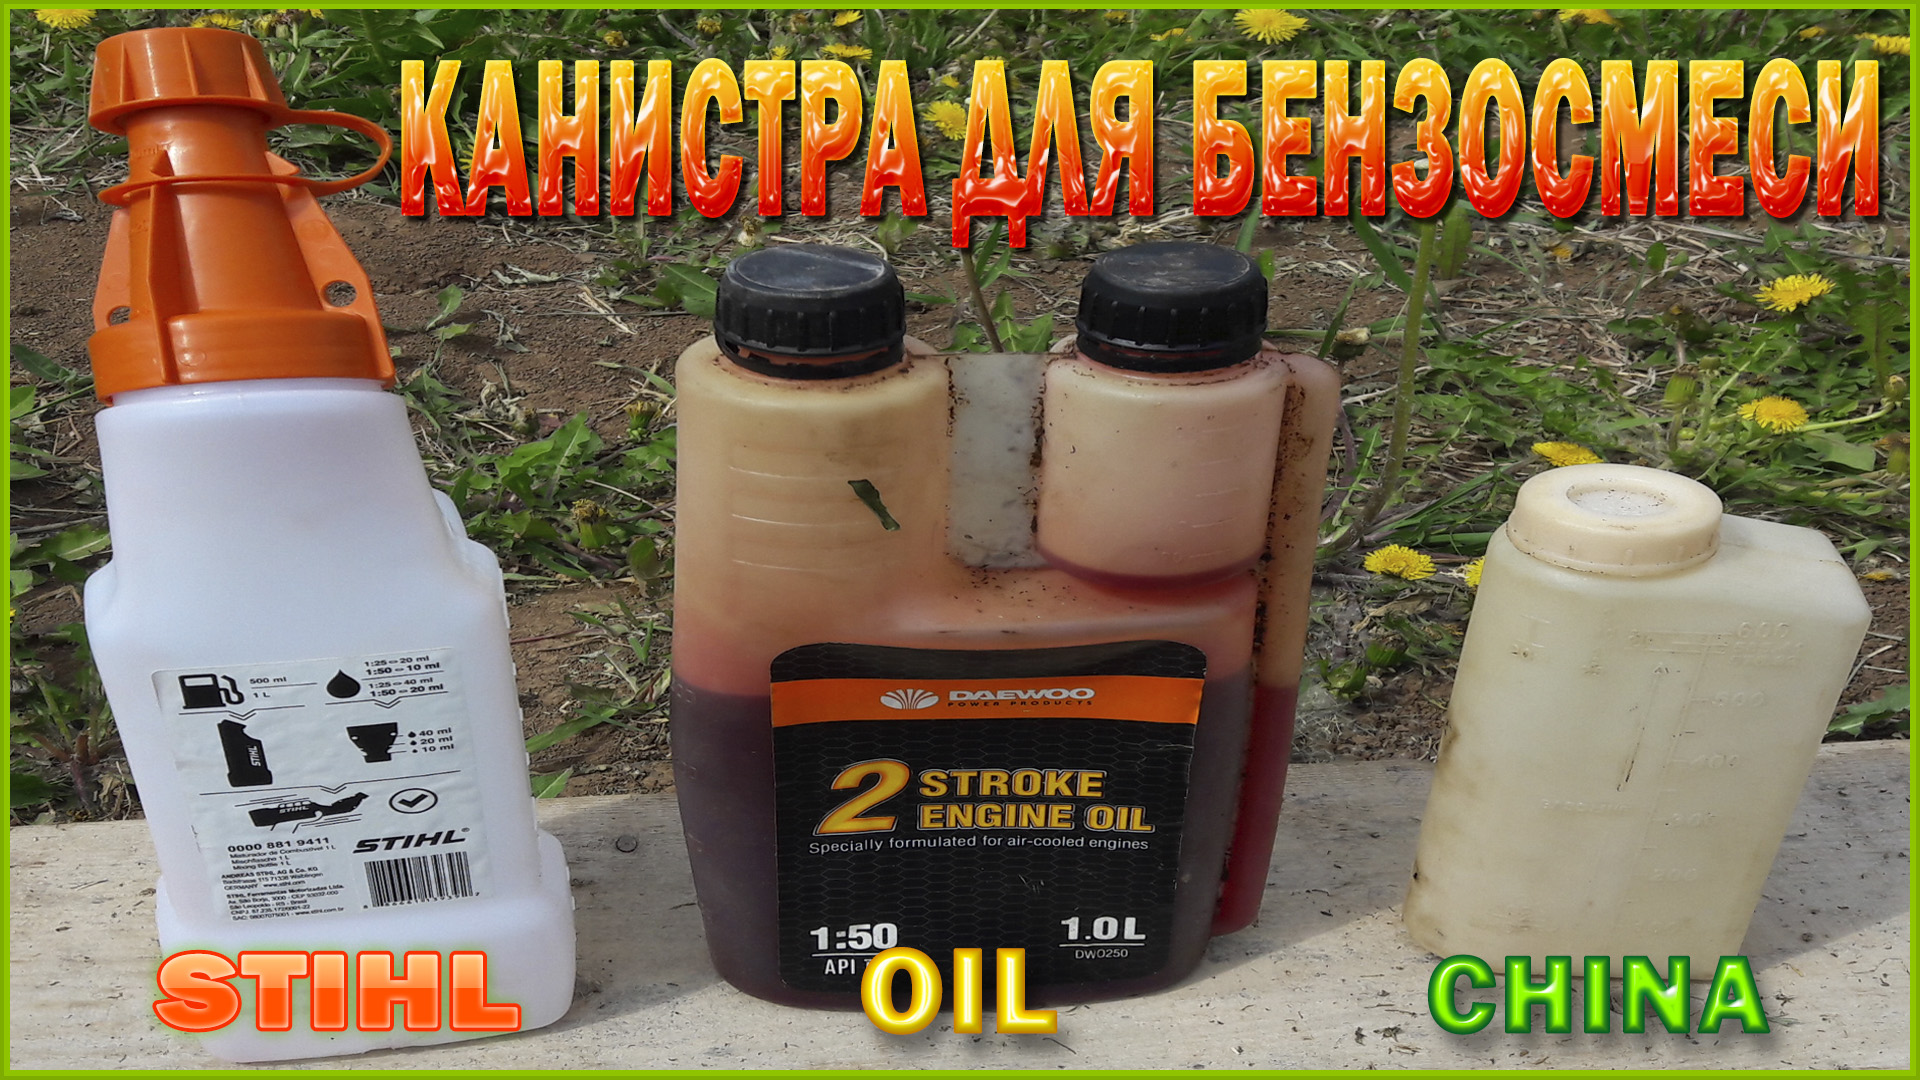 Пропорции масла и бензина для бензопилы: какое использовать, соотношение, как заливать, разбавить